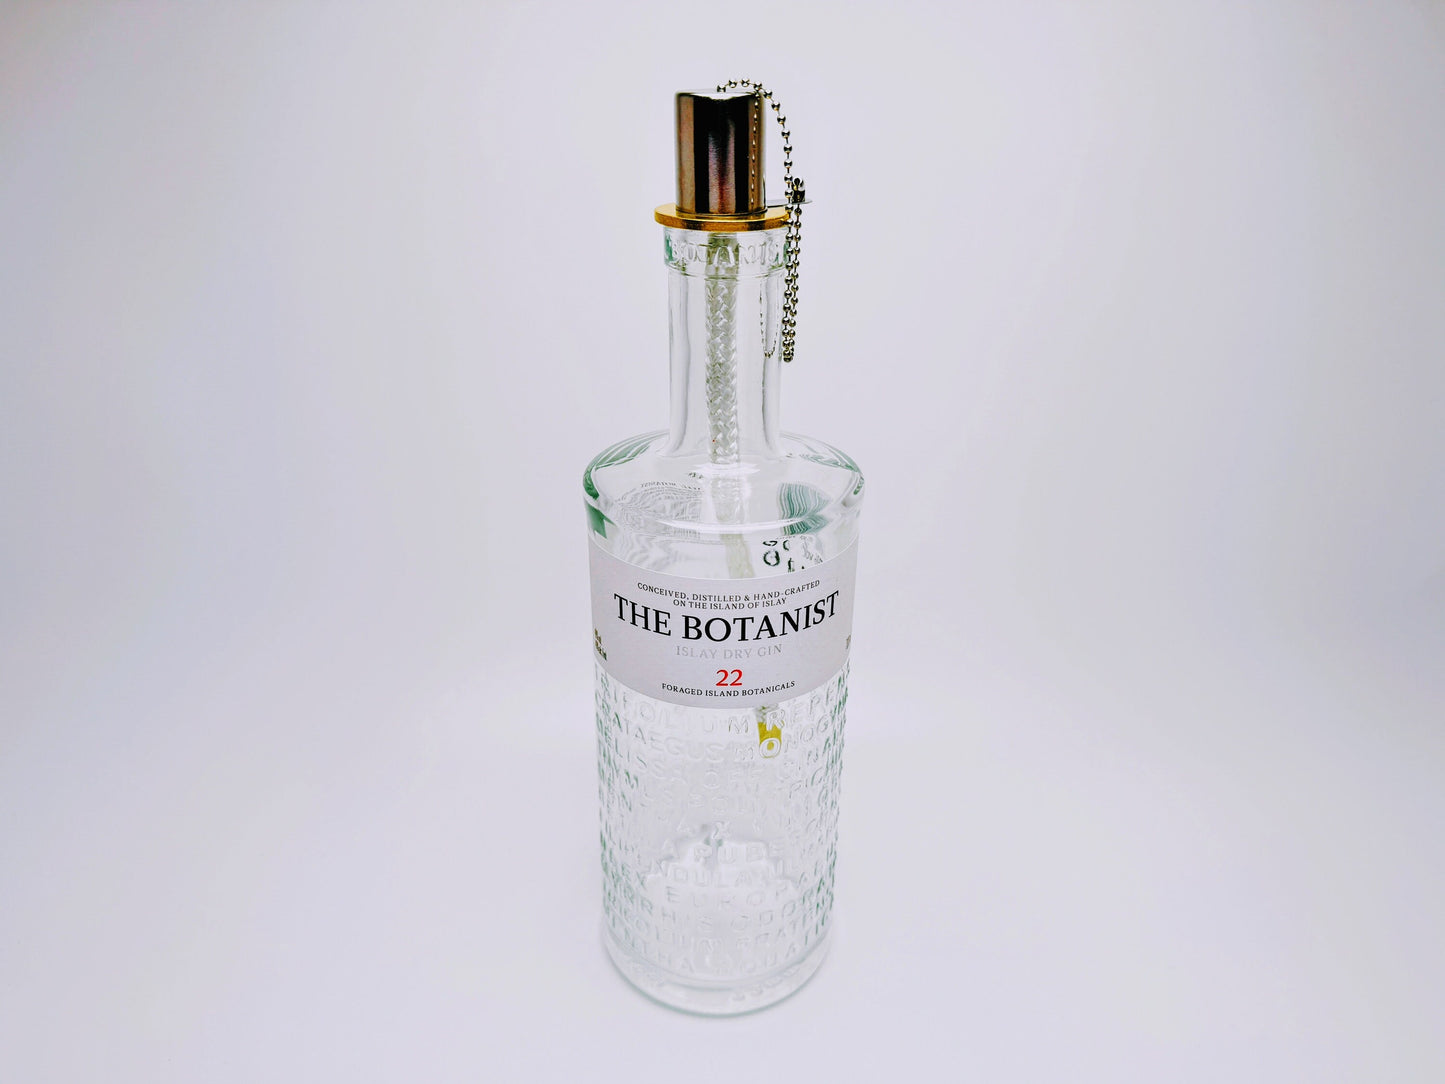 Gin Öllampe "Botanist" | Handgemachte Öllampe aus Botanist Gin Flaschen | Upcycling | Handgefertigt | Individuell | Geschenk | Deko